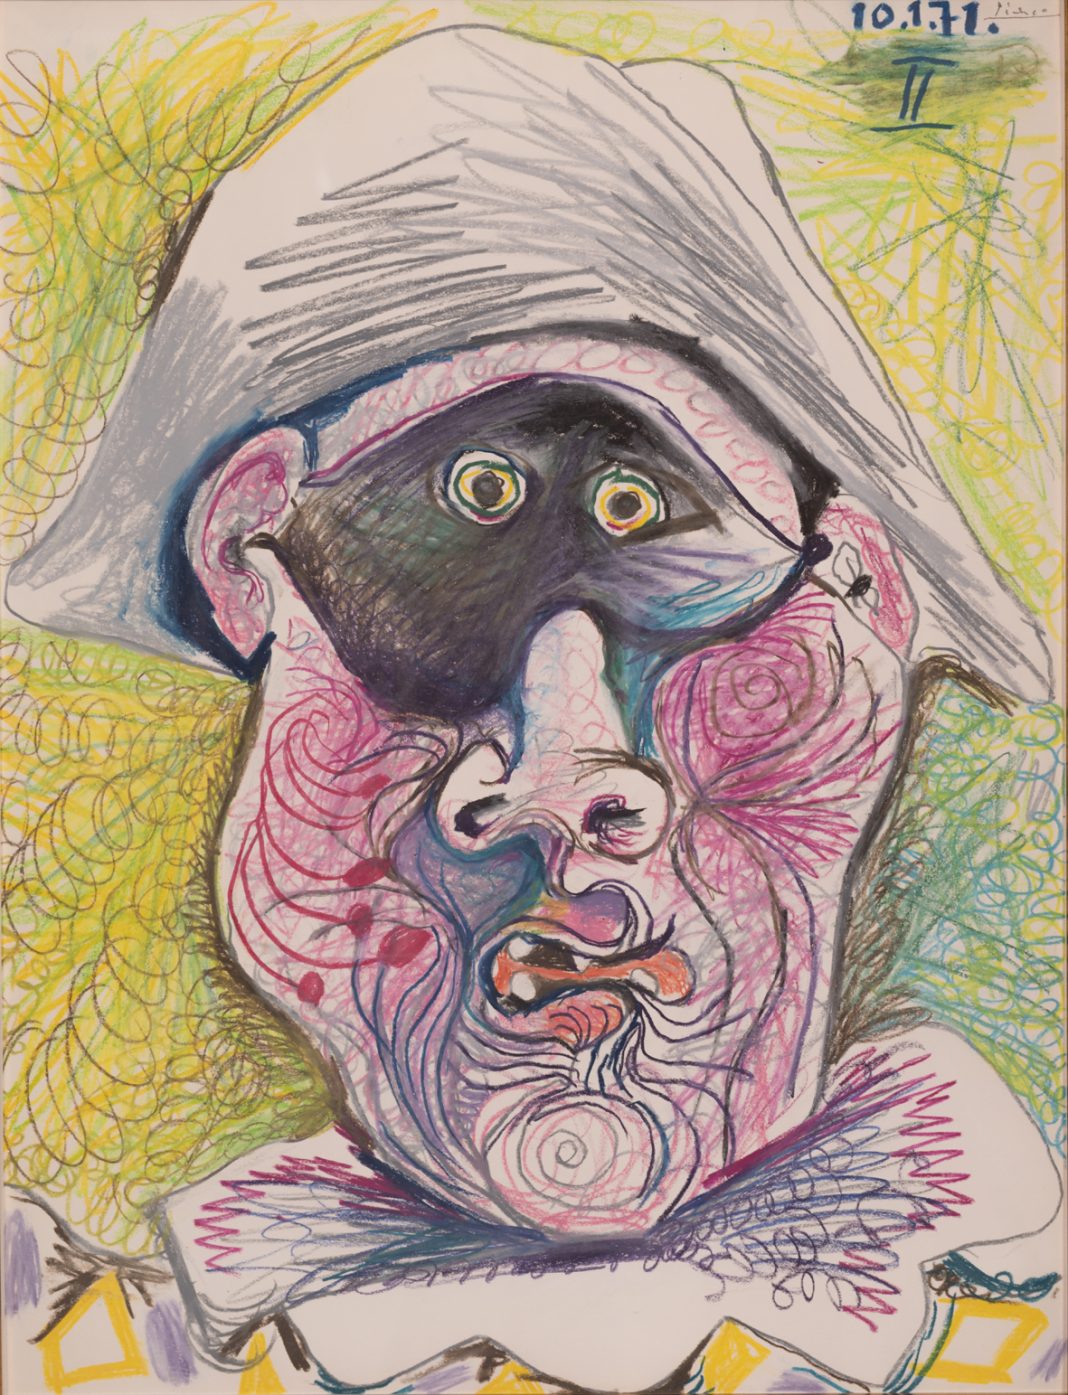 Dagli impressionisti a Picasso. Capolavori della Johannesburg Art Galleryhttps://www.exibart.com/repository/media/2019/09/Pablo-Picasso-Testa-di-Arlecchino-II-1971-matita-e-pastello-su-carta.-1068x1395.jpg